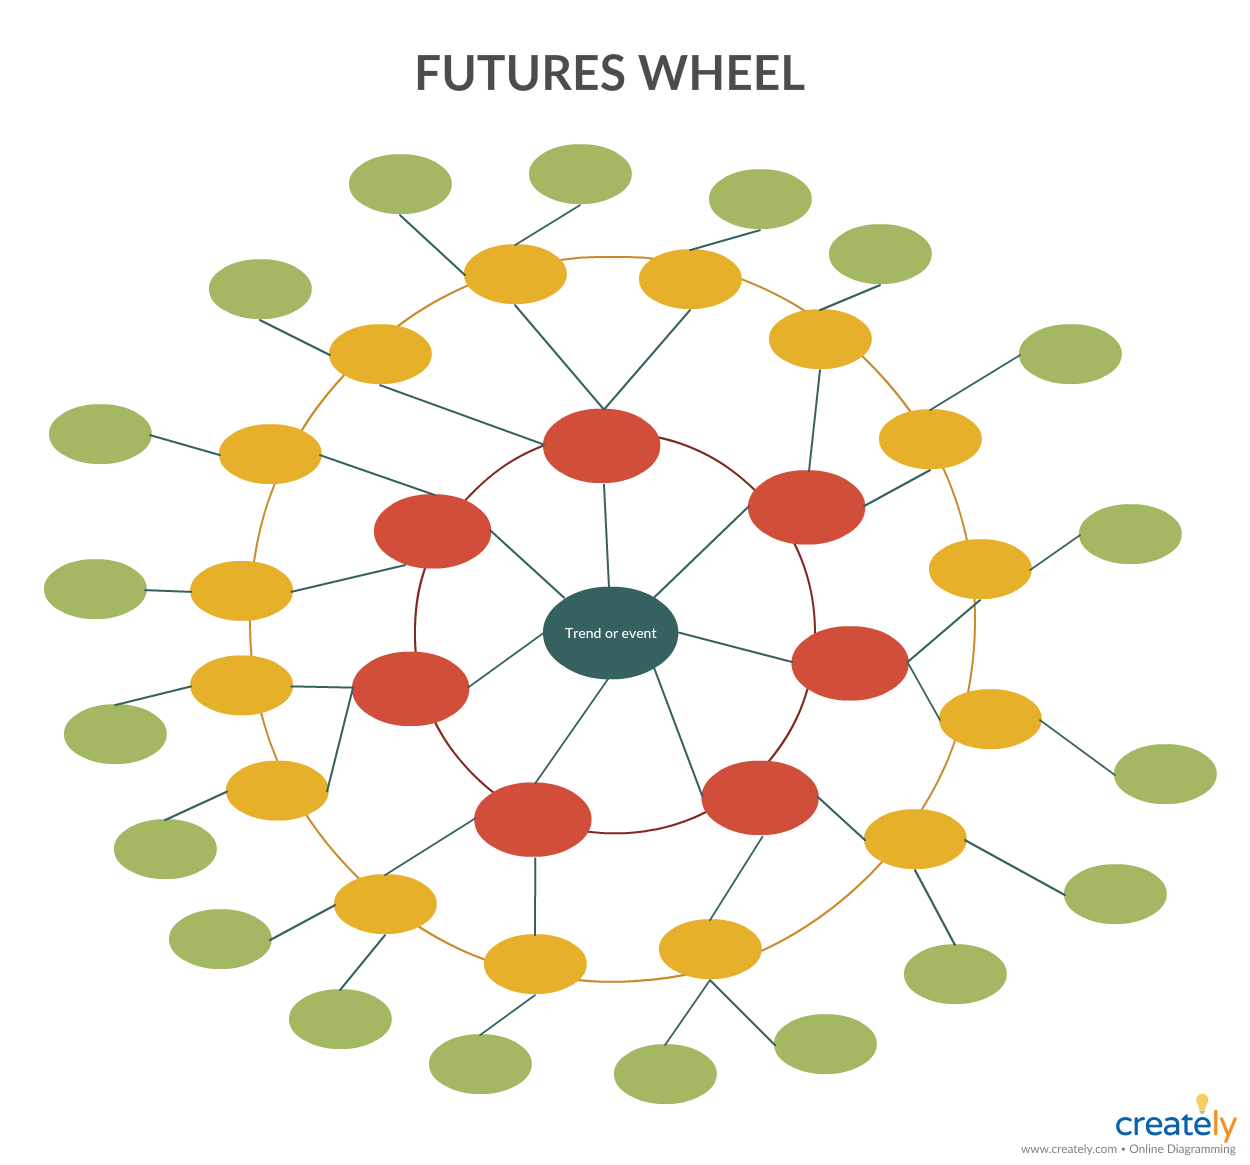 دیاگرام چرخ آینده (Futures wheel diagram)